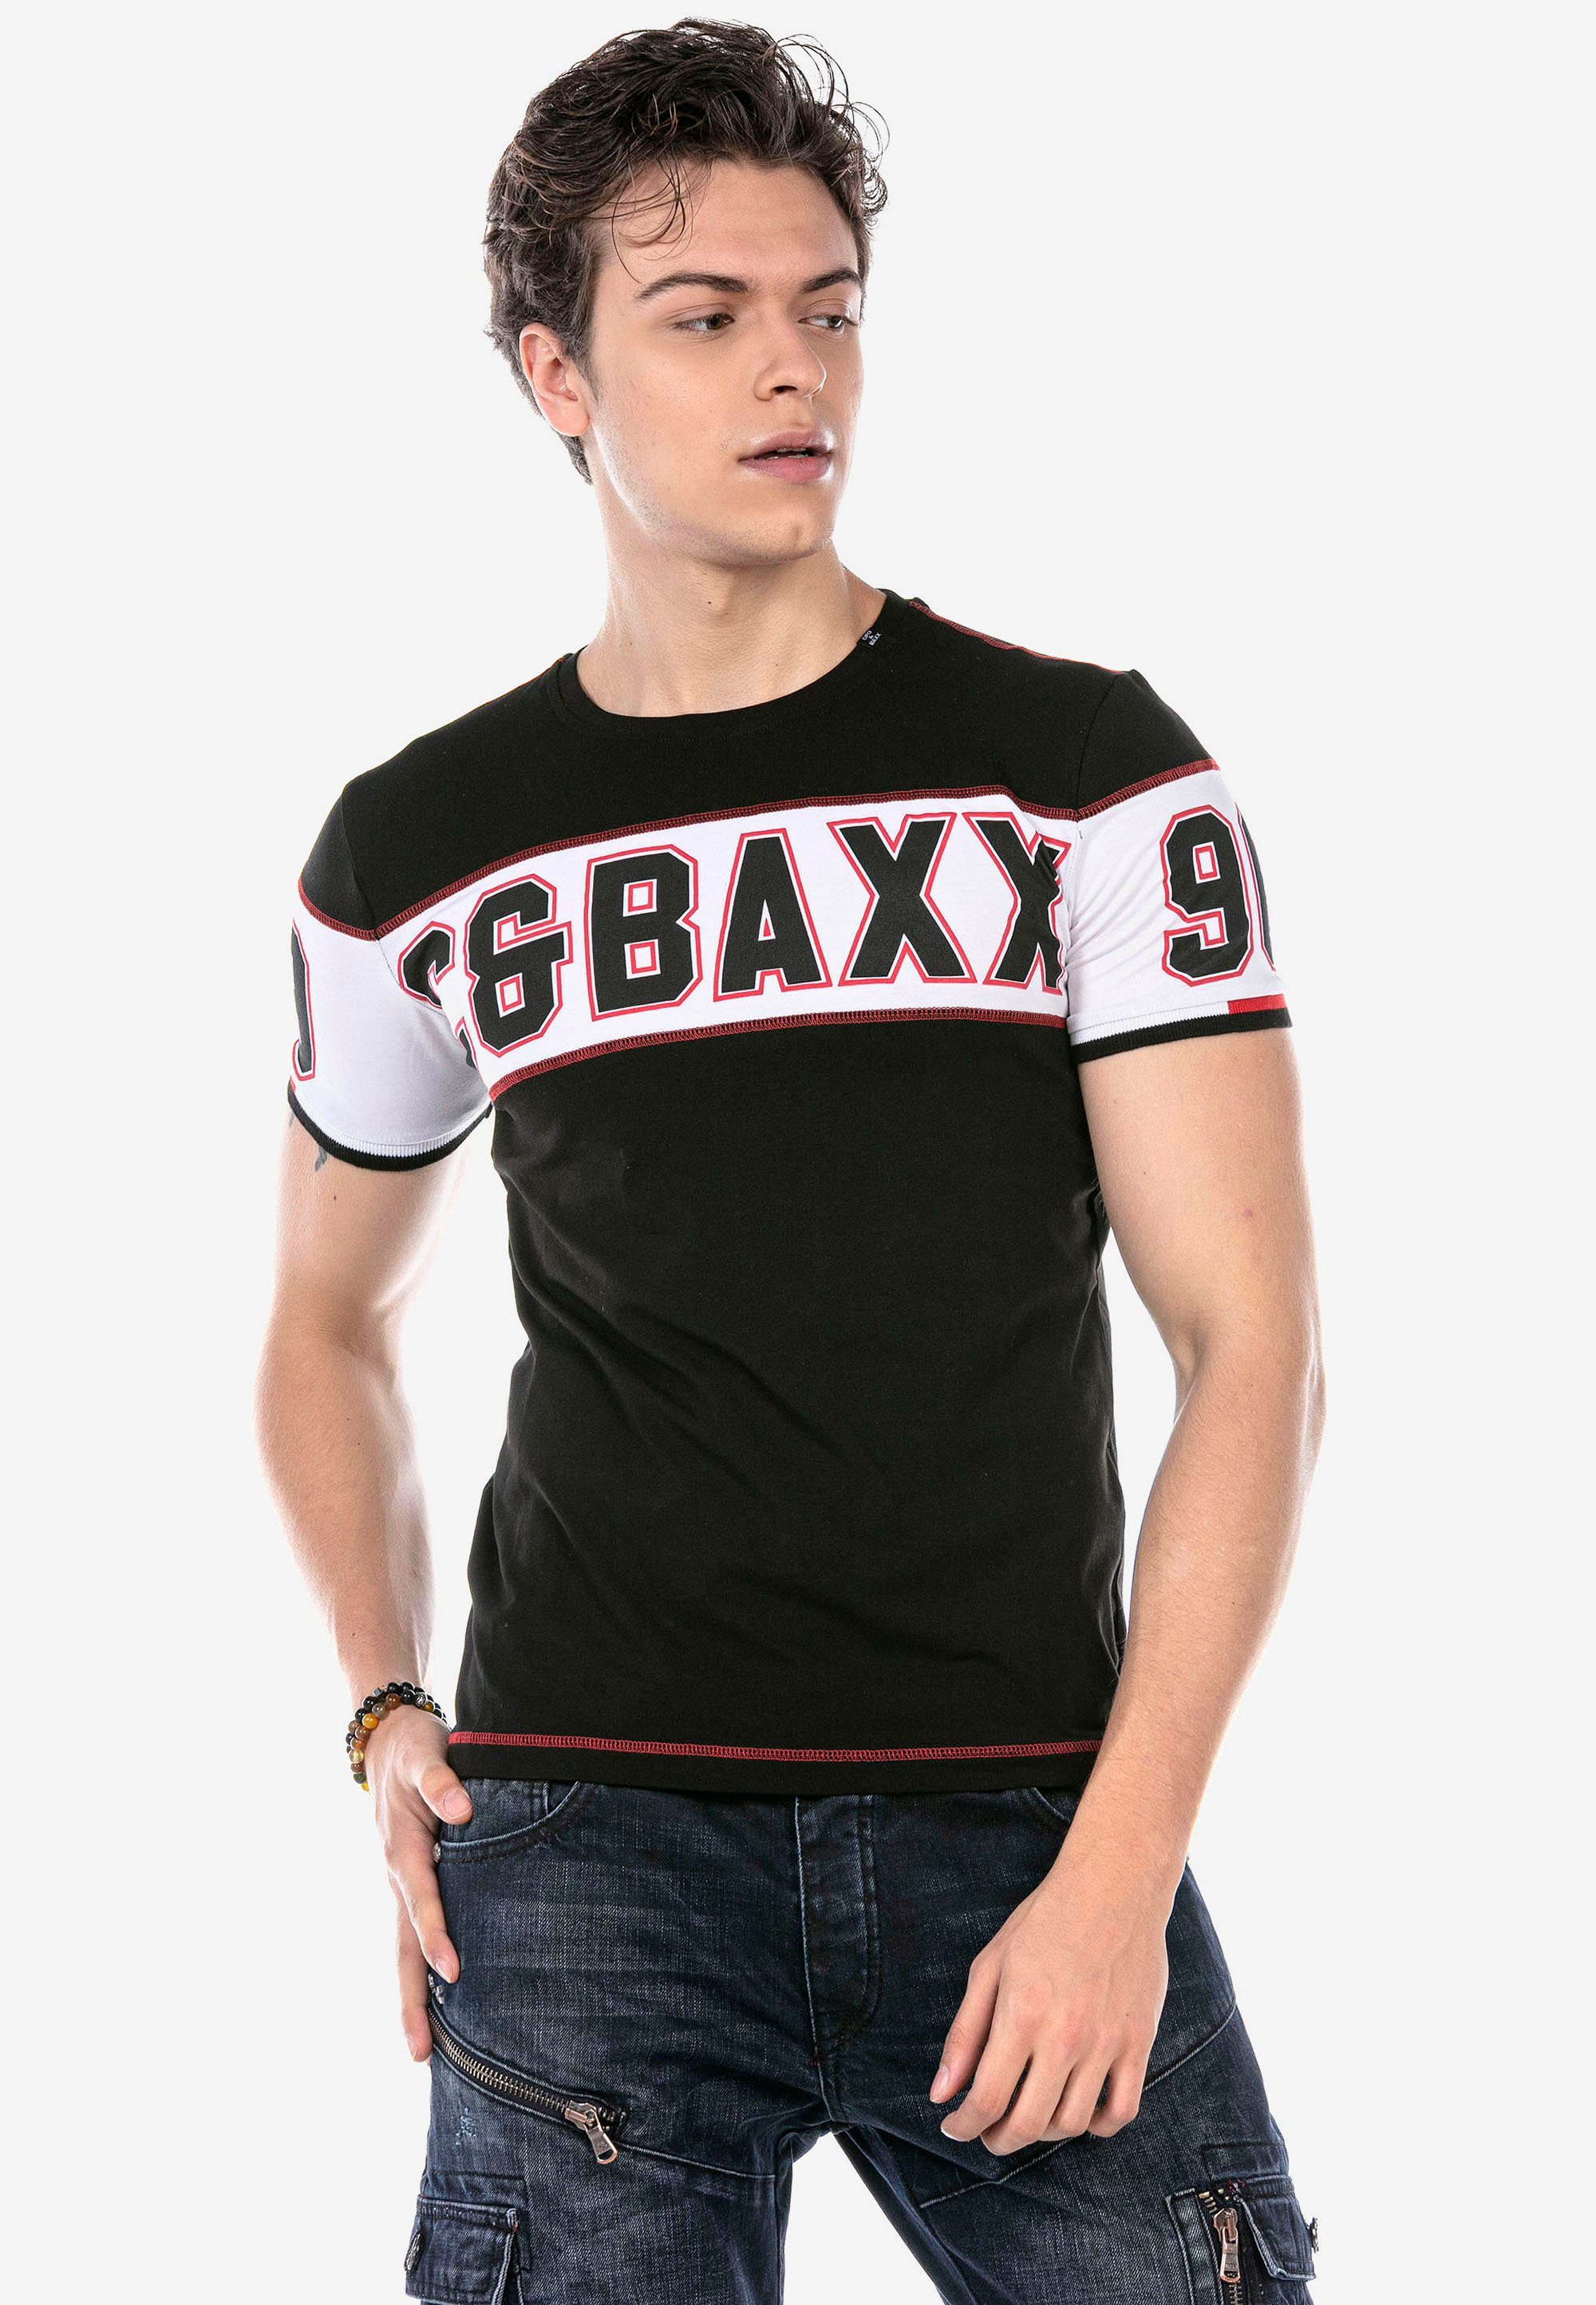 T-Shirt mit Baxx Print & schwarz auffälligem Cipo